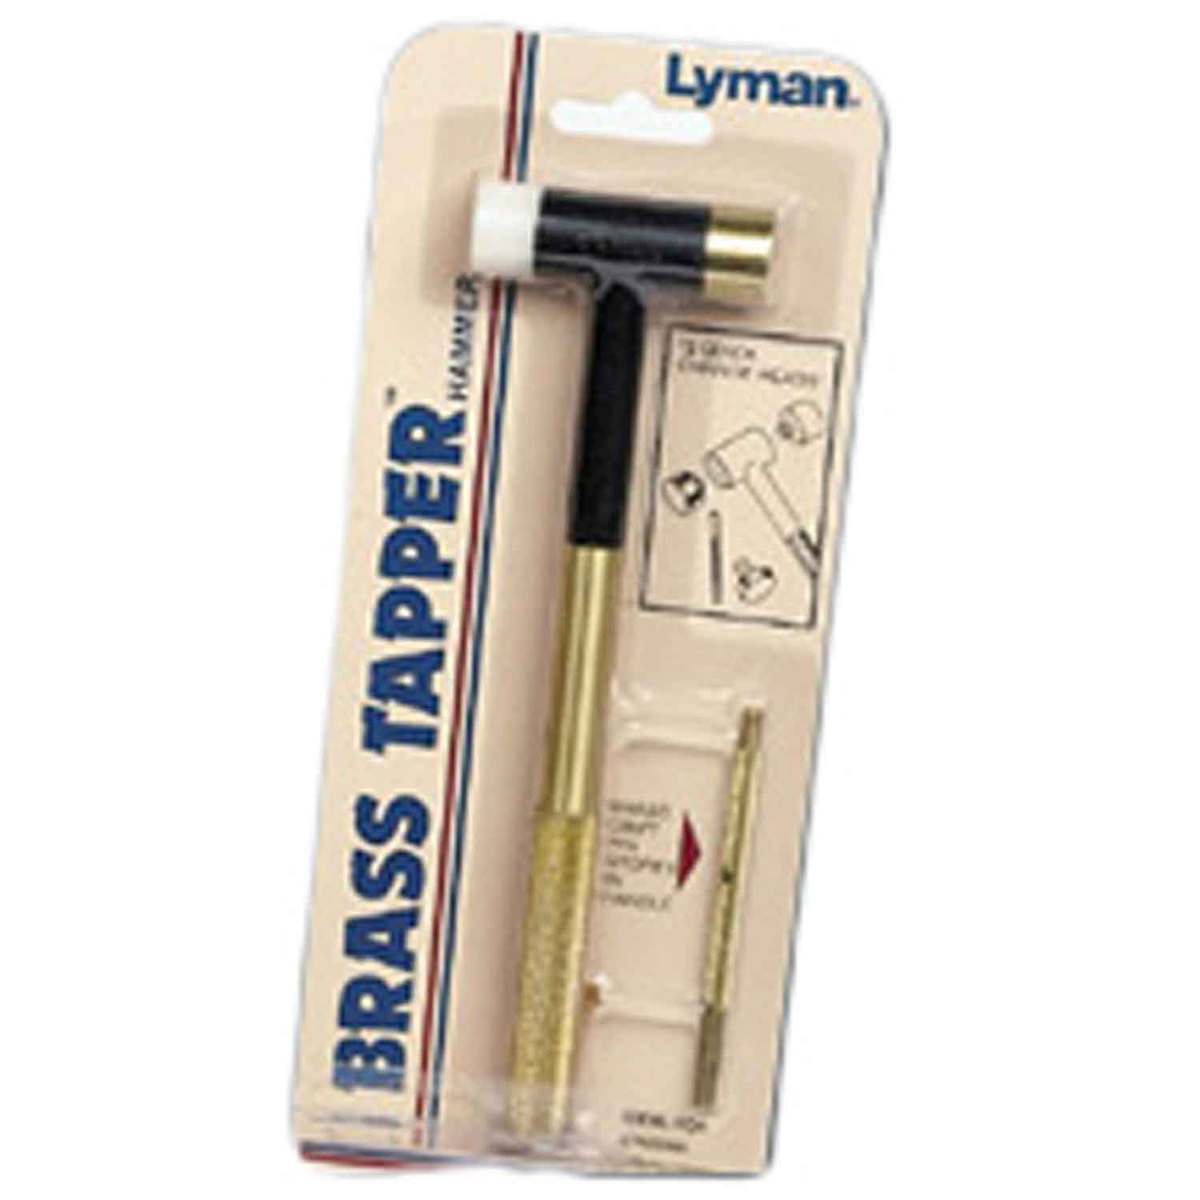 Lyman Tapper Hammer Interchangeable Brass, Nylon, Steel Heads Punch